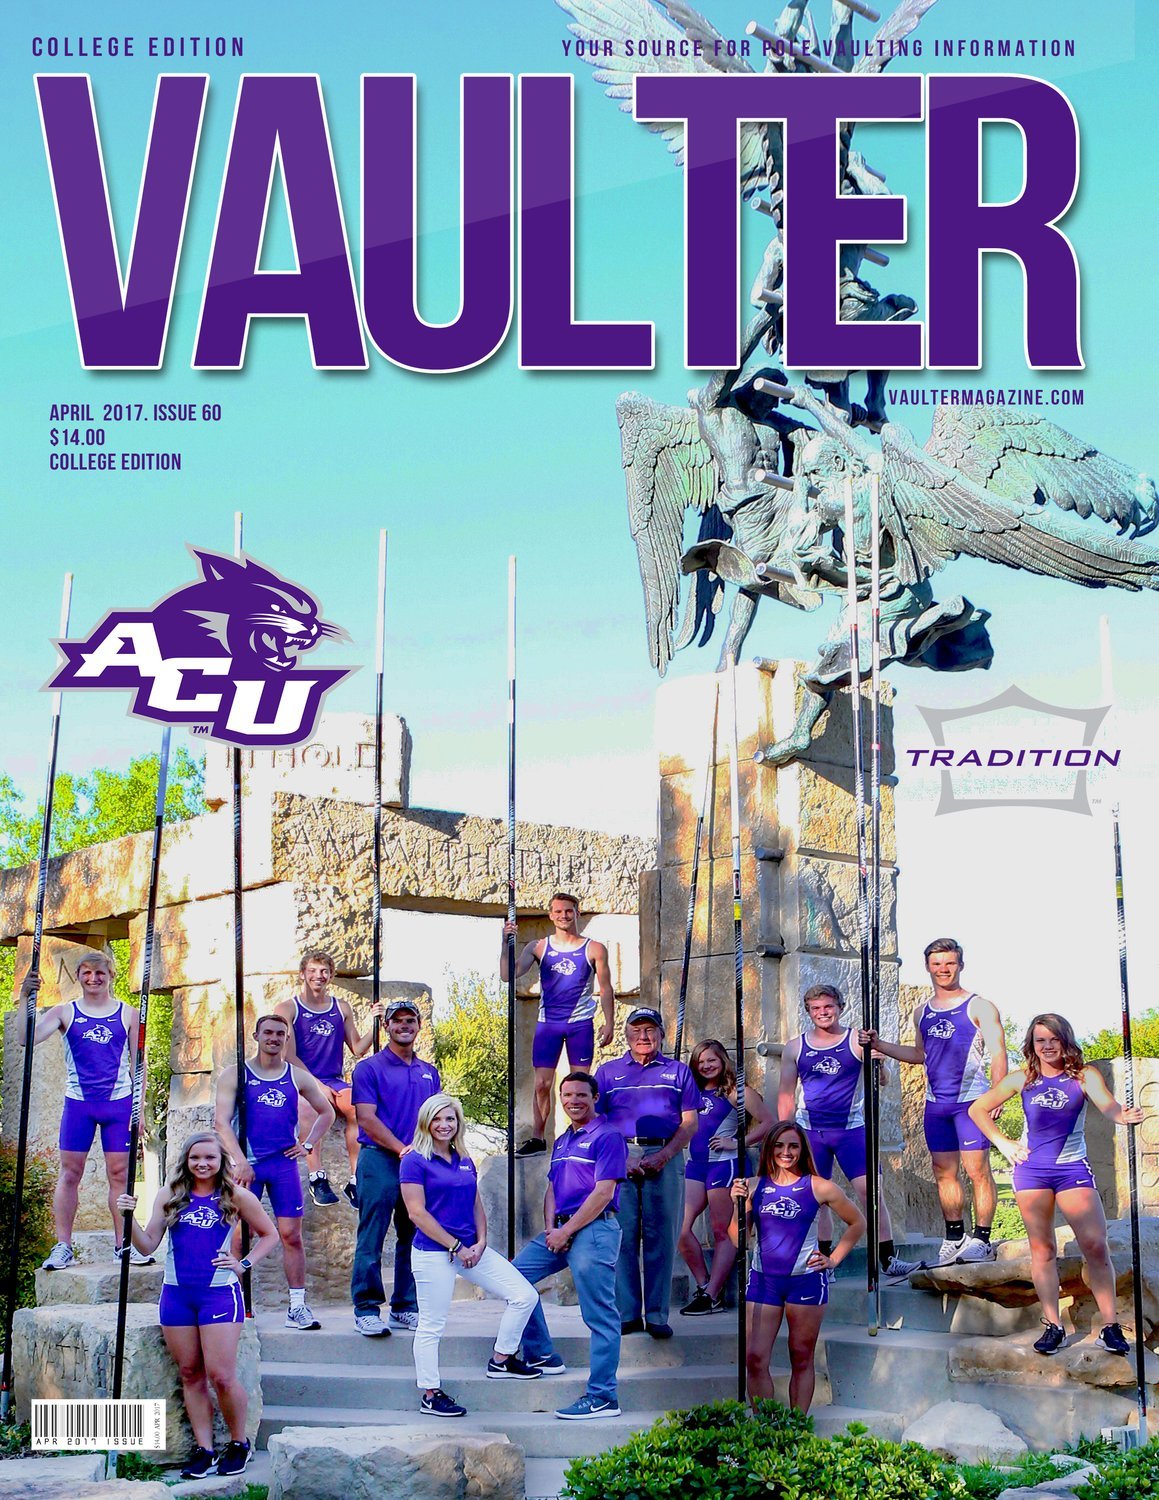 Abilene Christian University Cover of Vaulter Magazine April 2017